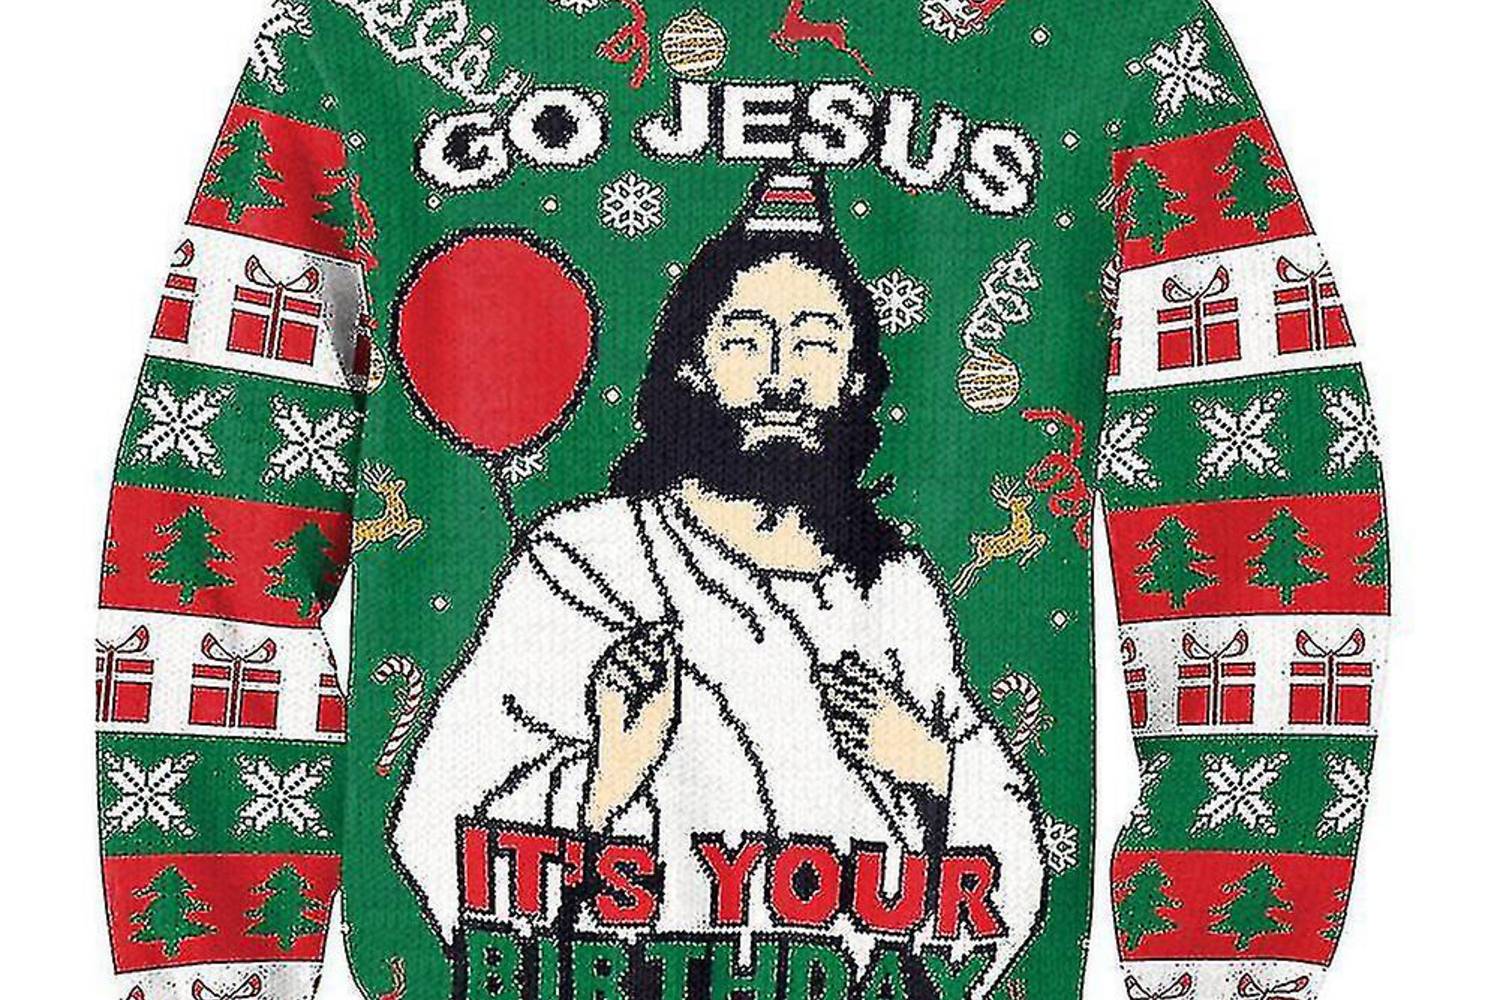 A karácsonyi pulcsik egészen új változatán a Mikulás helyett maga Jézus van jelen, aki ugye a szülinapját ünnepli. A fruugo.hu oldaláról rendelhető meg ez a különleges darab 5790 forintért.